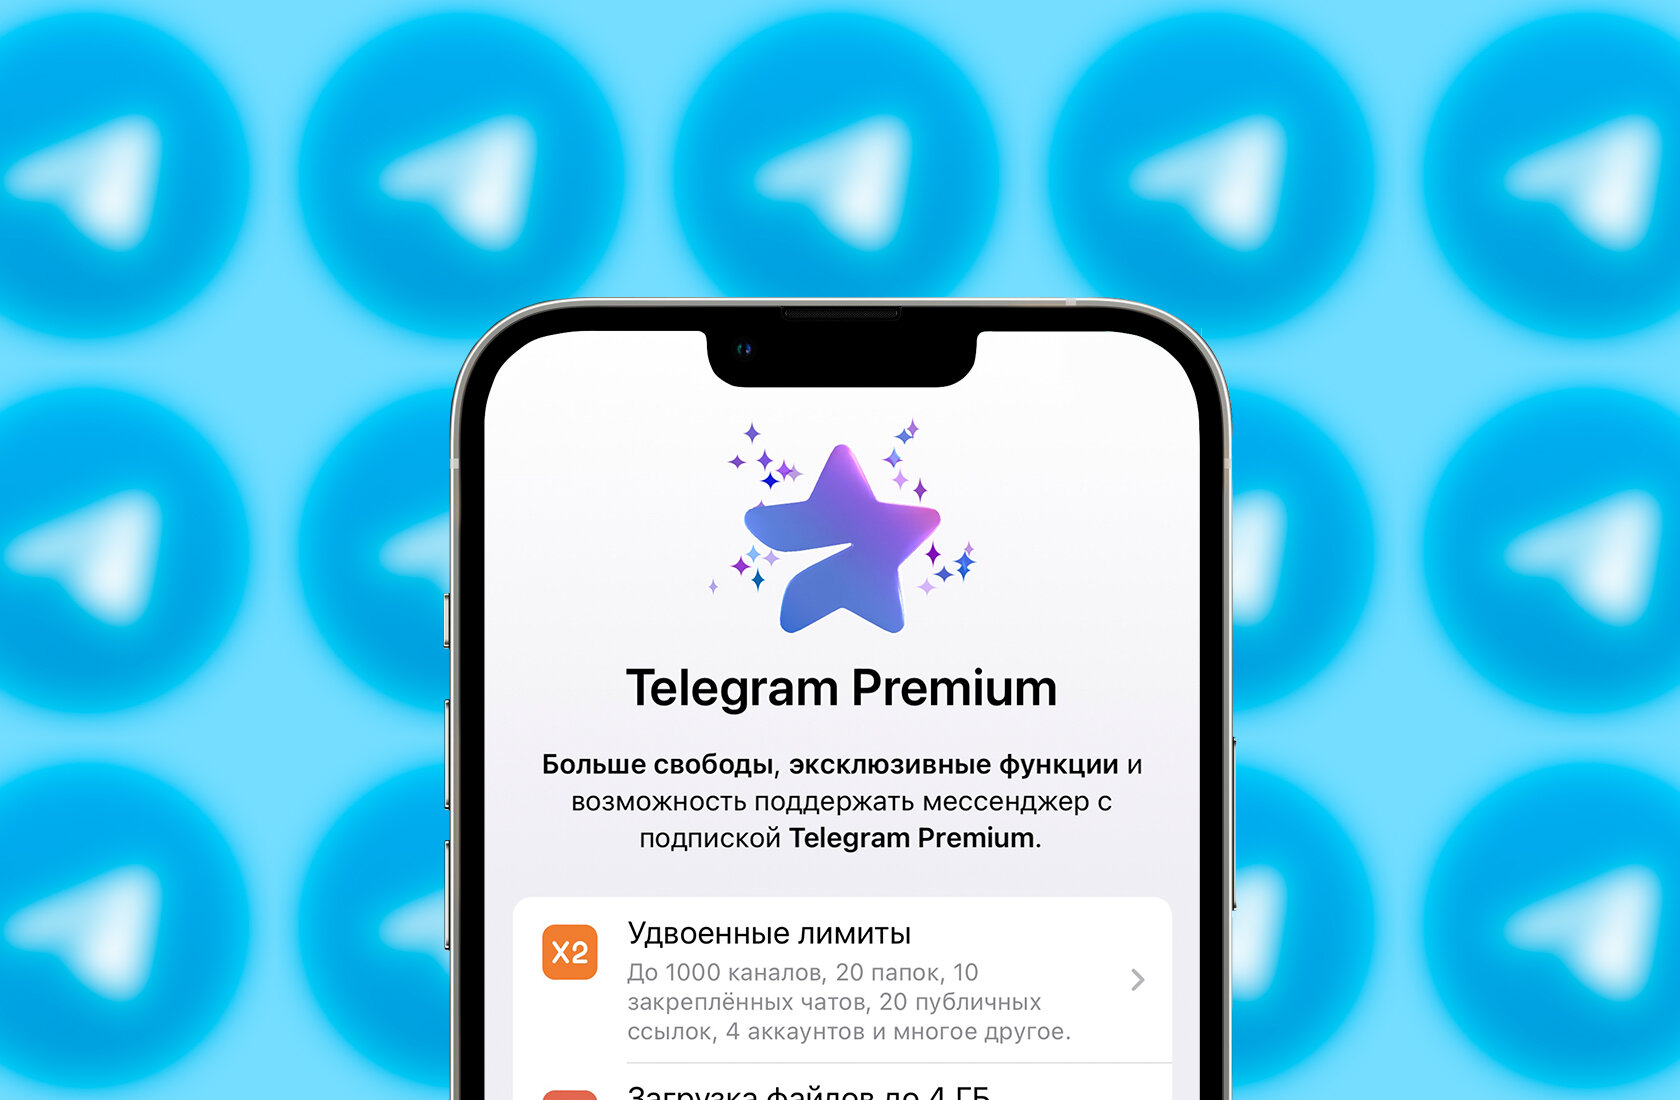 Telegram Premium — неудачная подписка. 8 причин, почему она бессмысленна за свои деньги